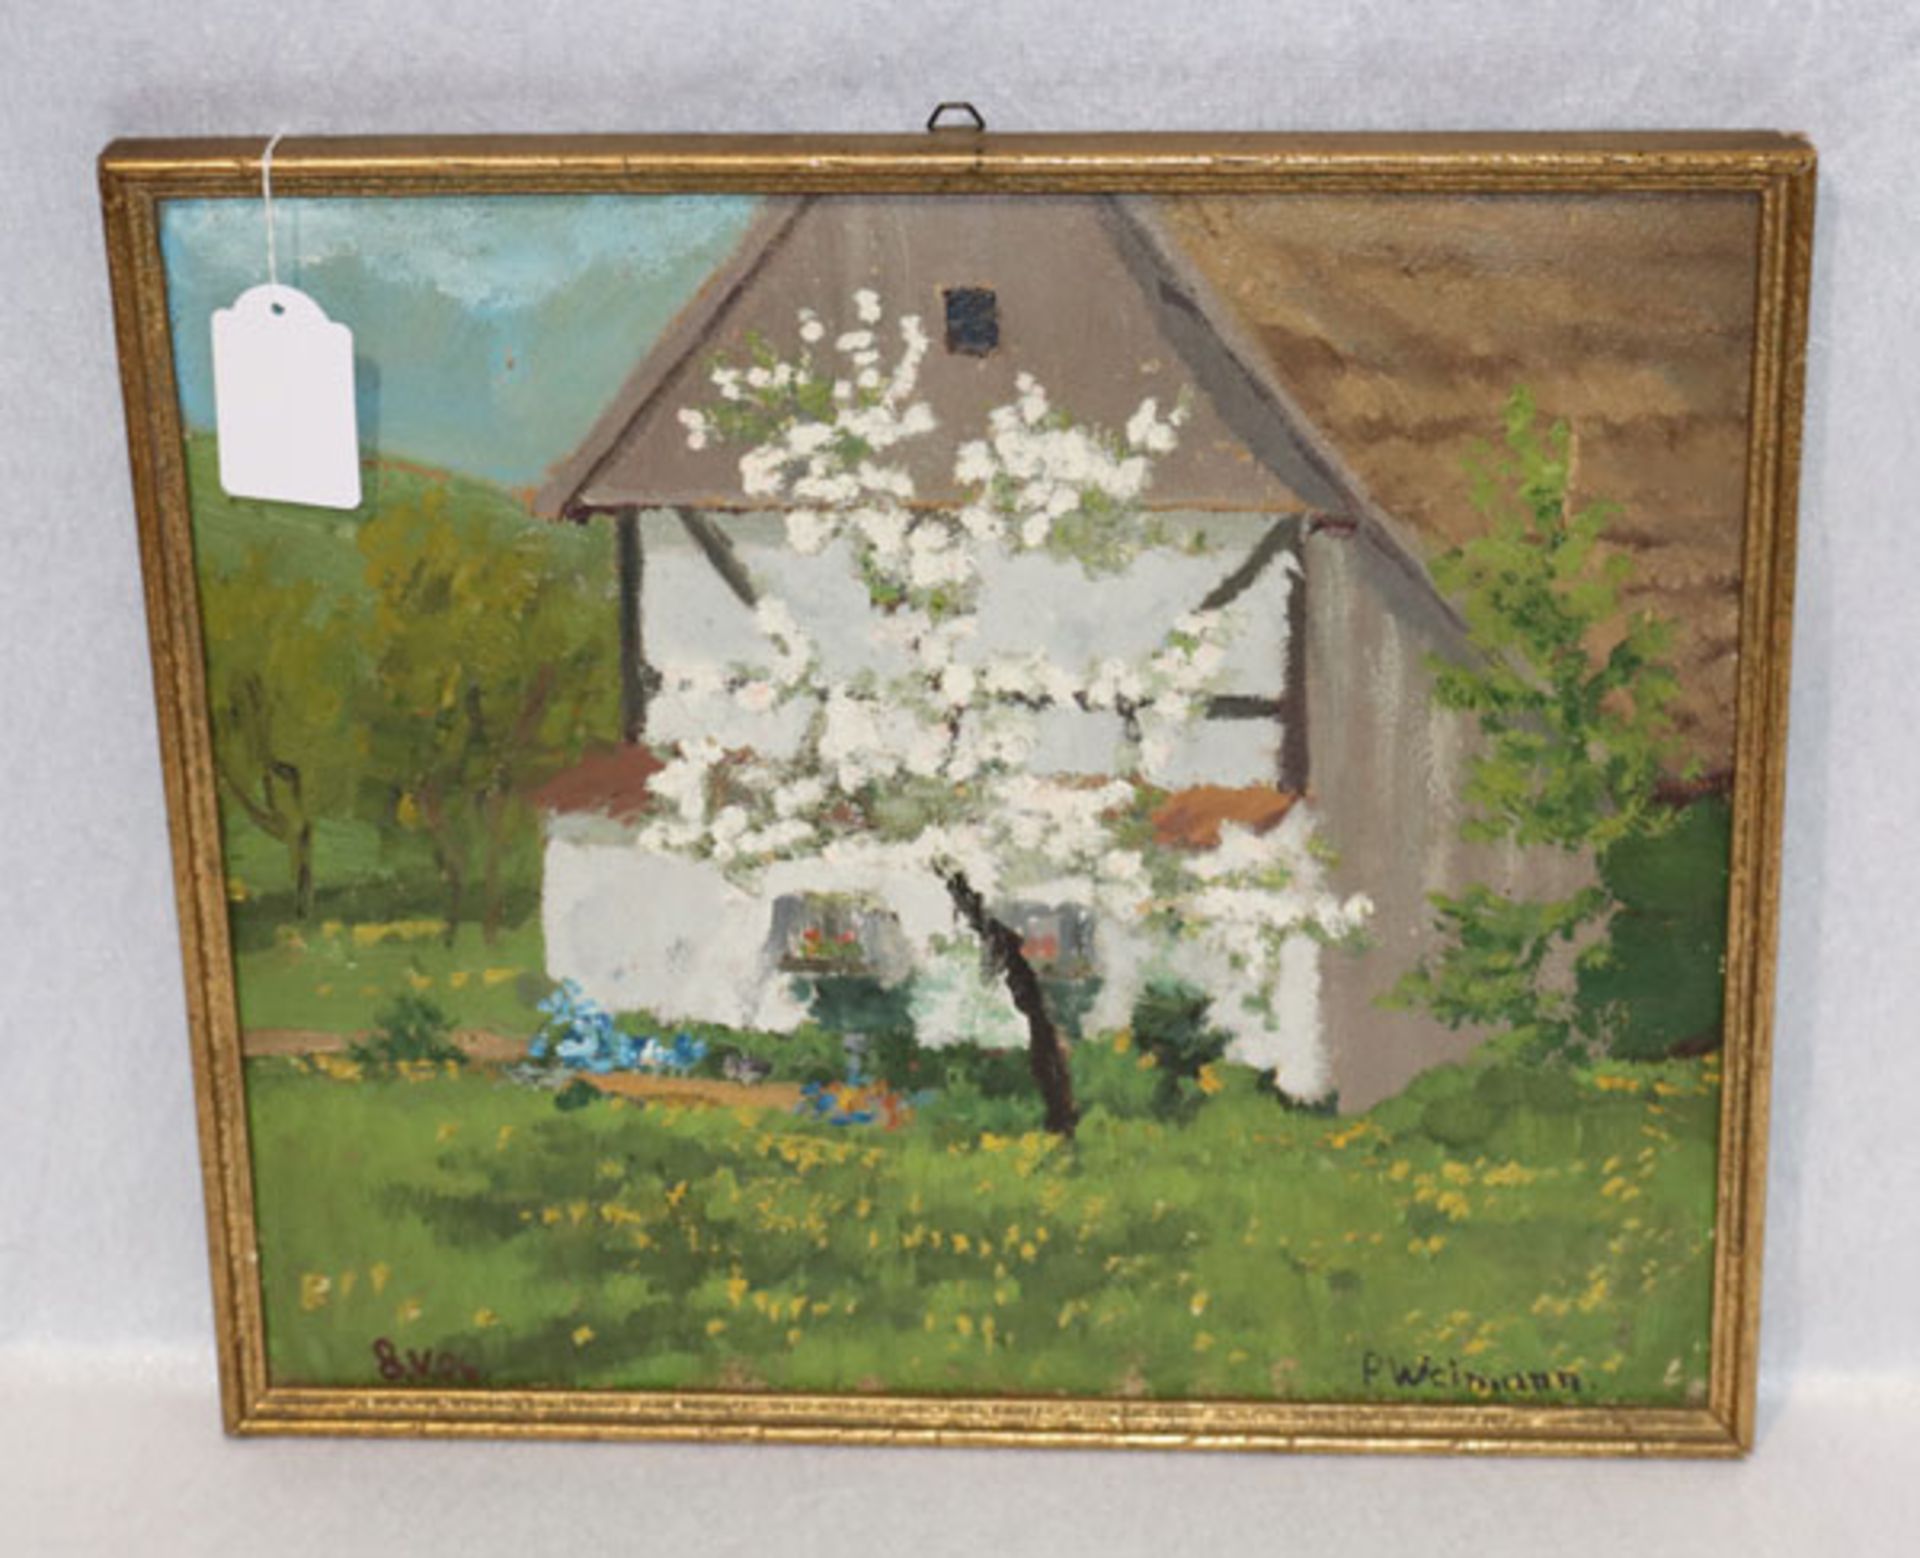 Gemälde ÖL/Malkarton 'Apfelbaum vor Bauernhaus', signiert P. Weimann, gerahmt, Rahmen bestossen,